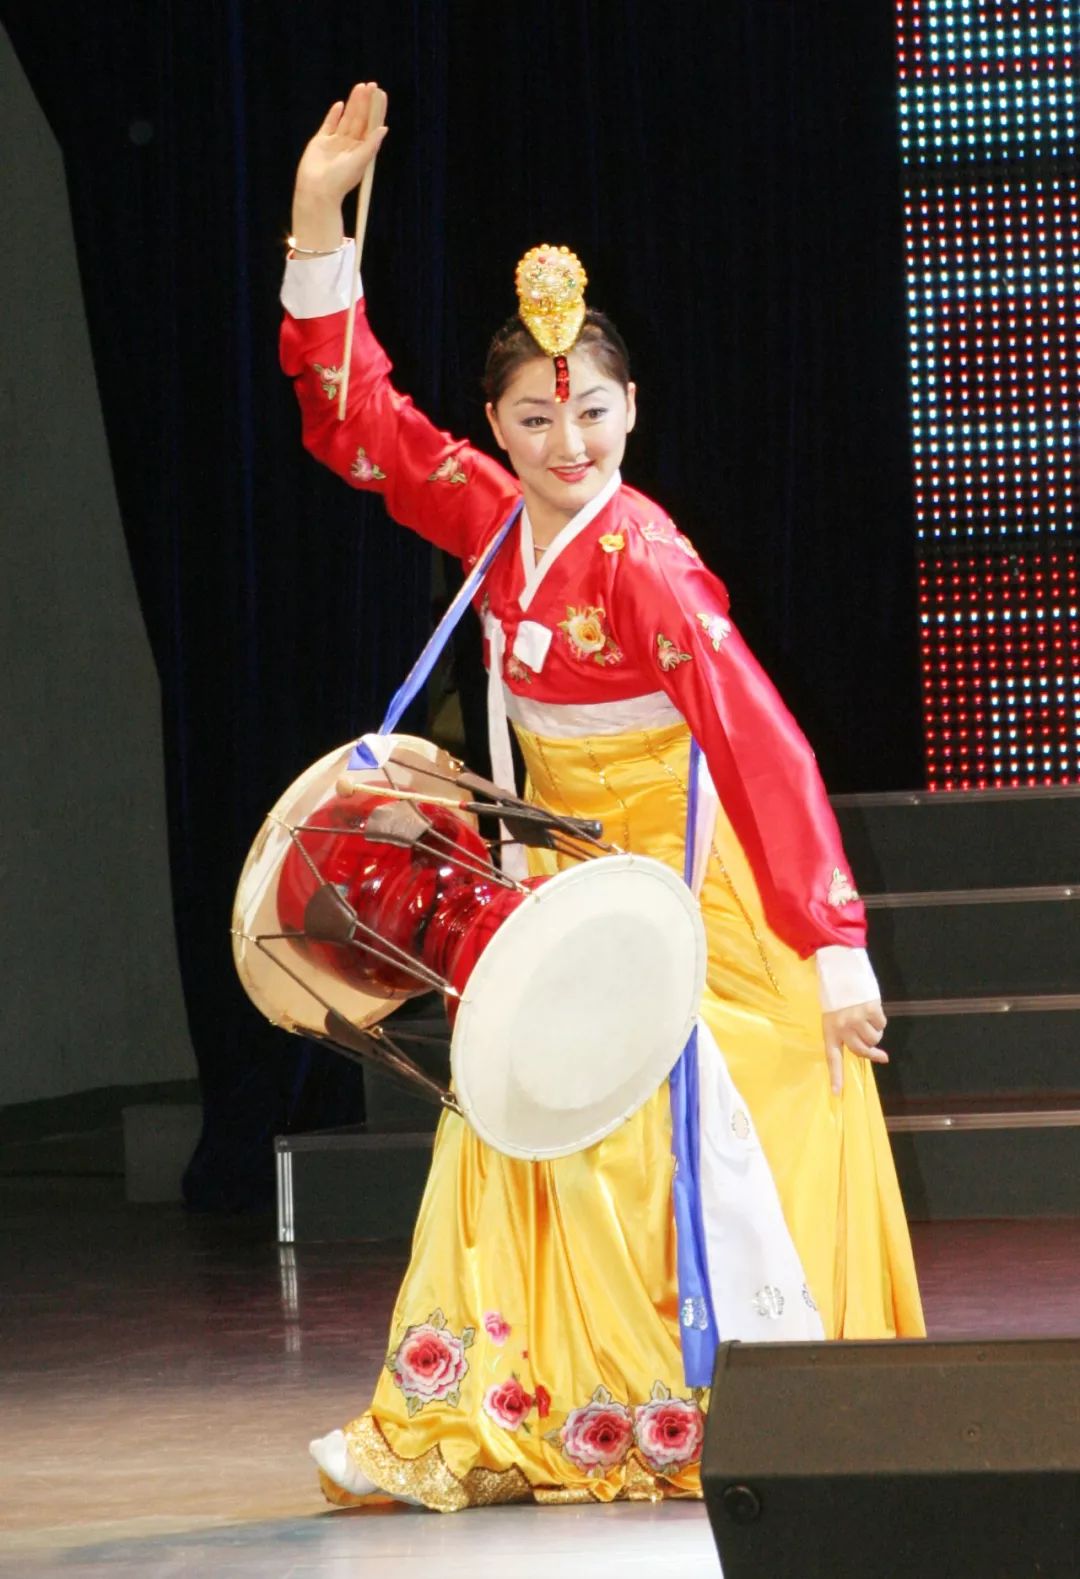 这个历史悠久的朝鲜族舞蹈,终于亮相了!